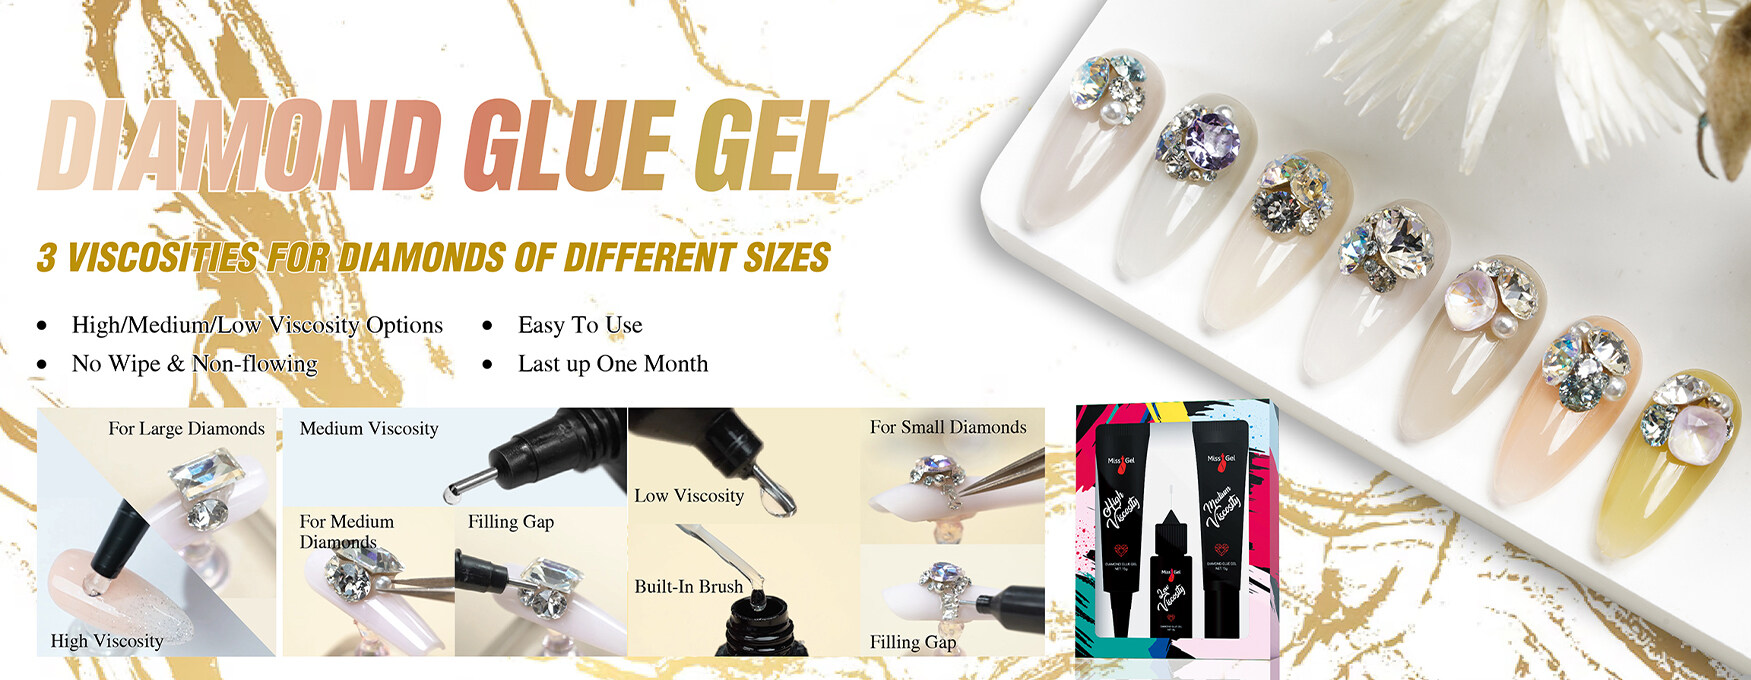 Professional Gel Nail Machine Tool Kit Supplies-Missgel